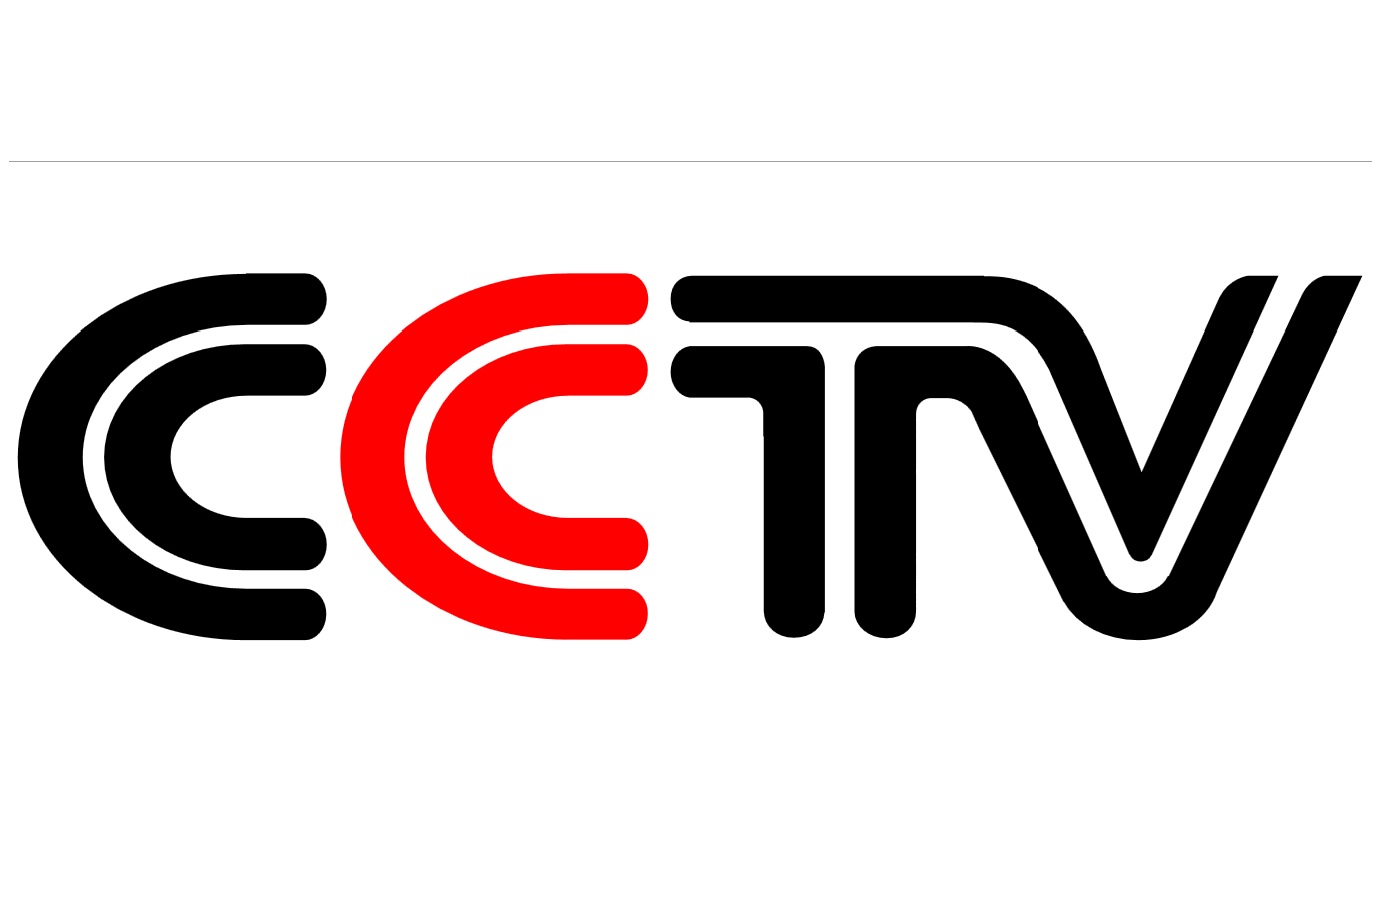 cctv 4 kamera megfigyelő rendszer használati útmutató 2